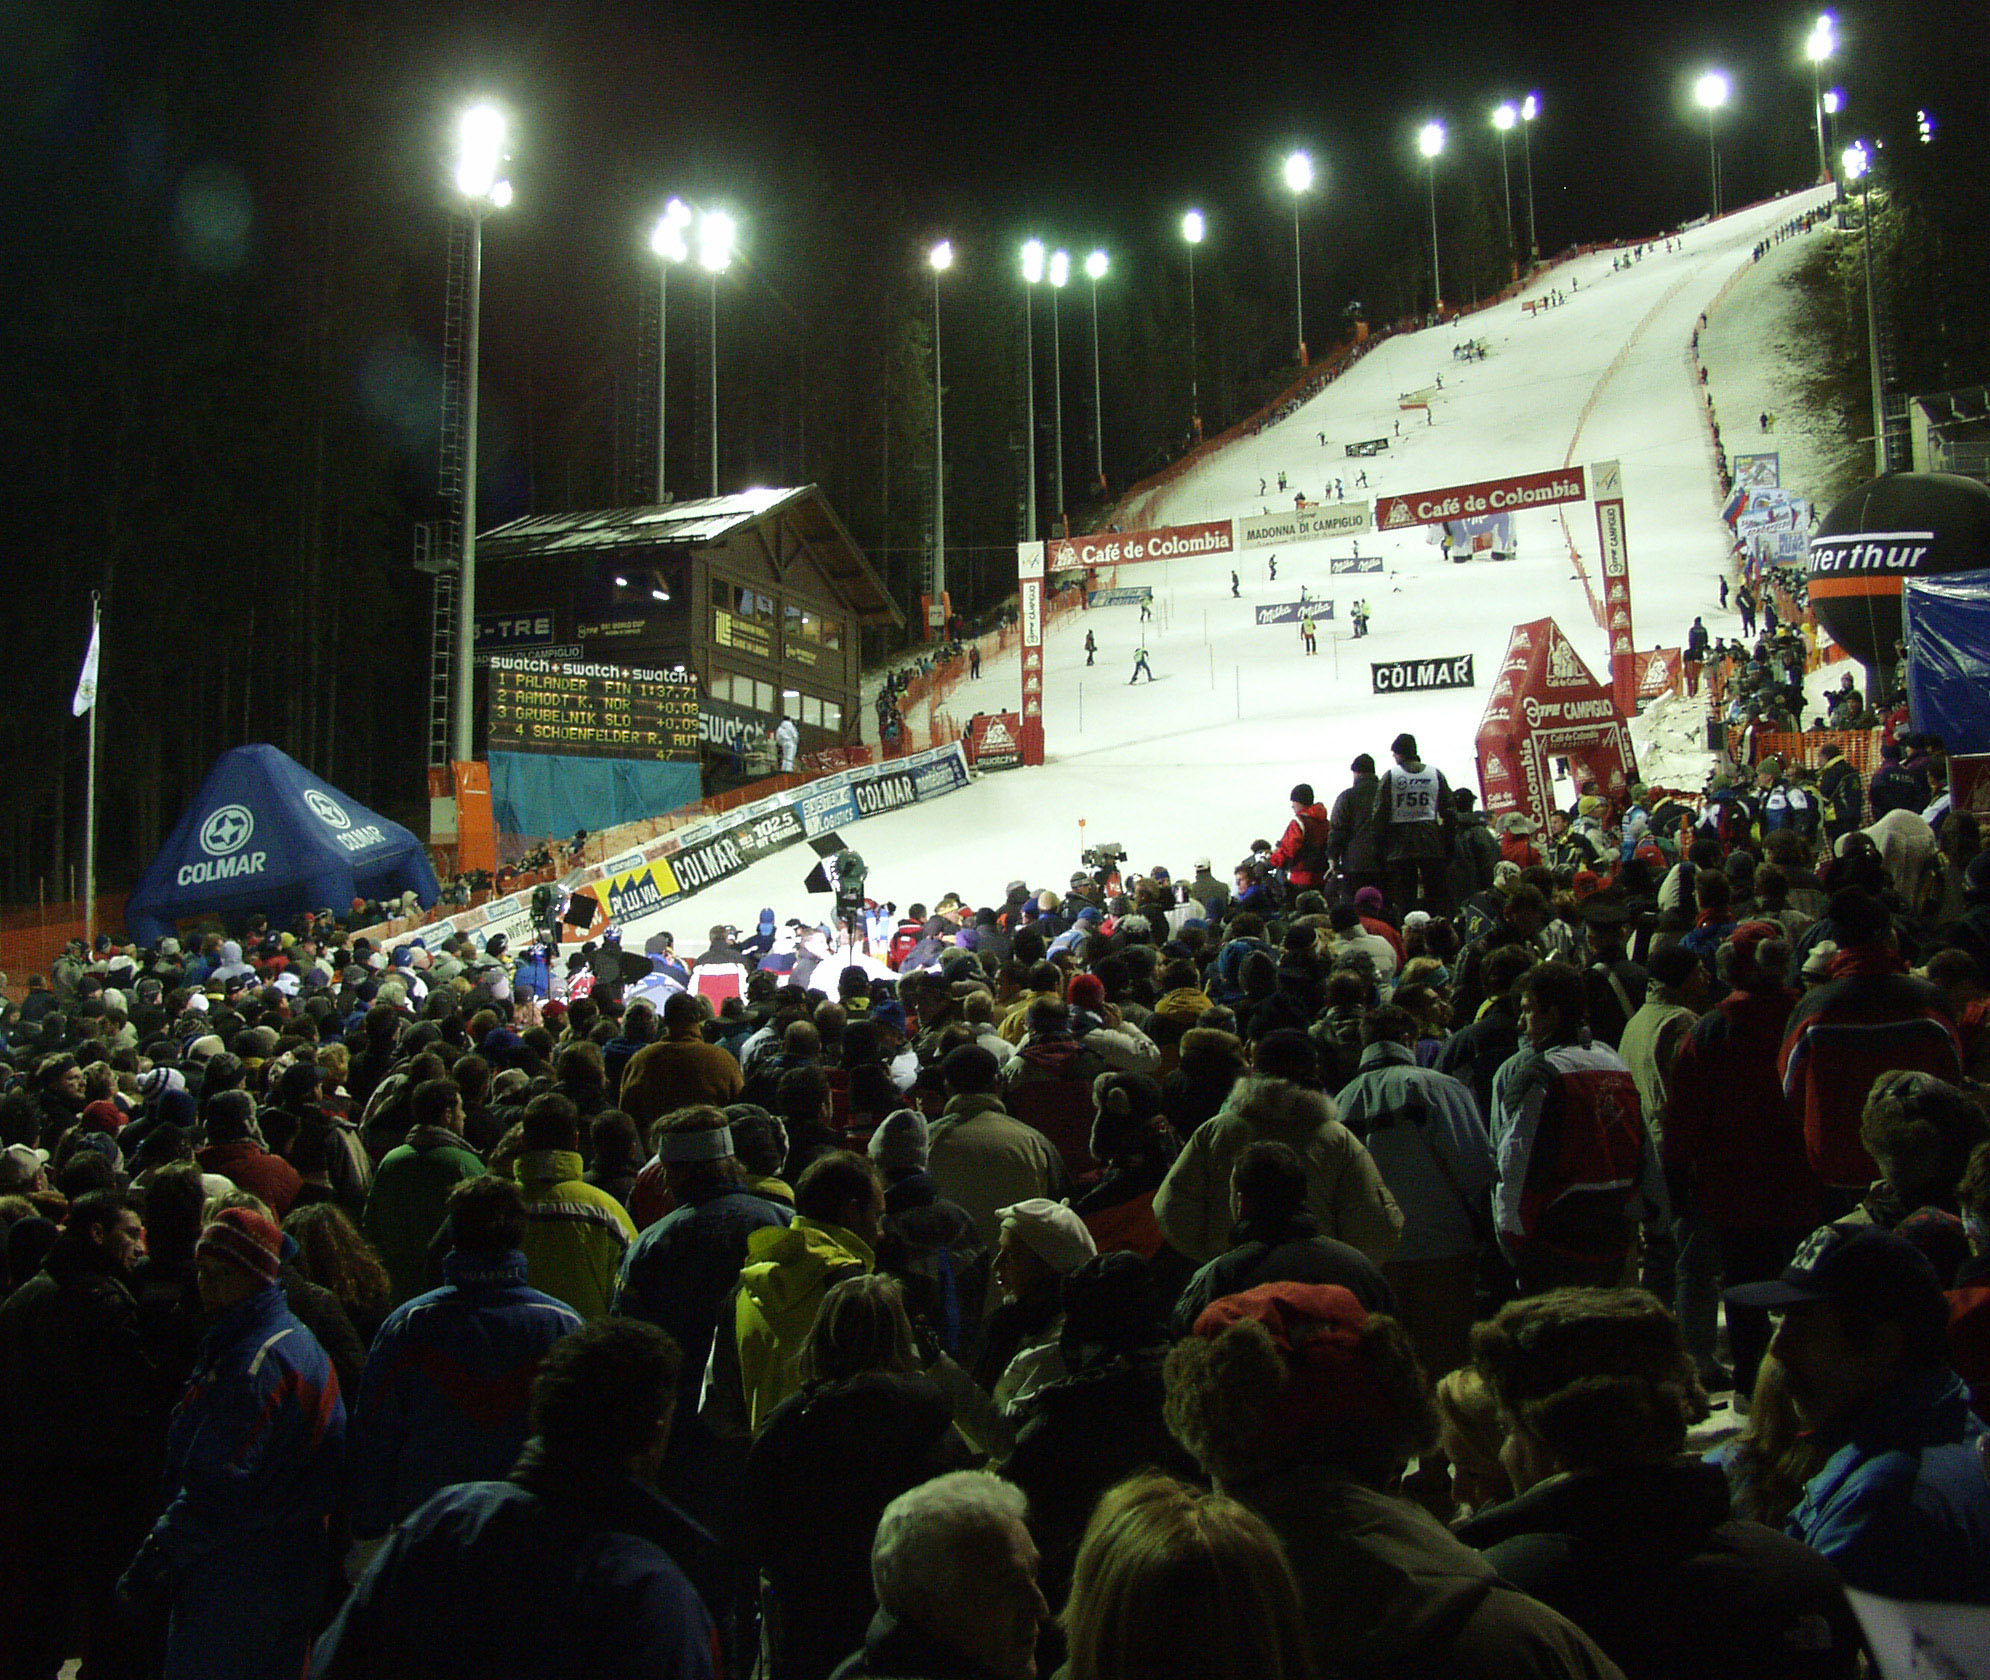 La 3-Tre di Campiglio nella Coppa del Mondo di sci alpino fino al 2016